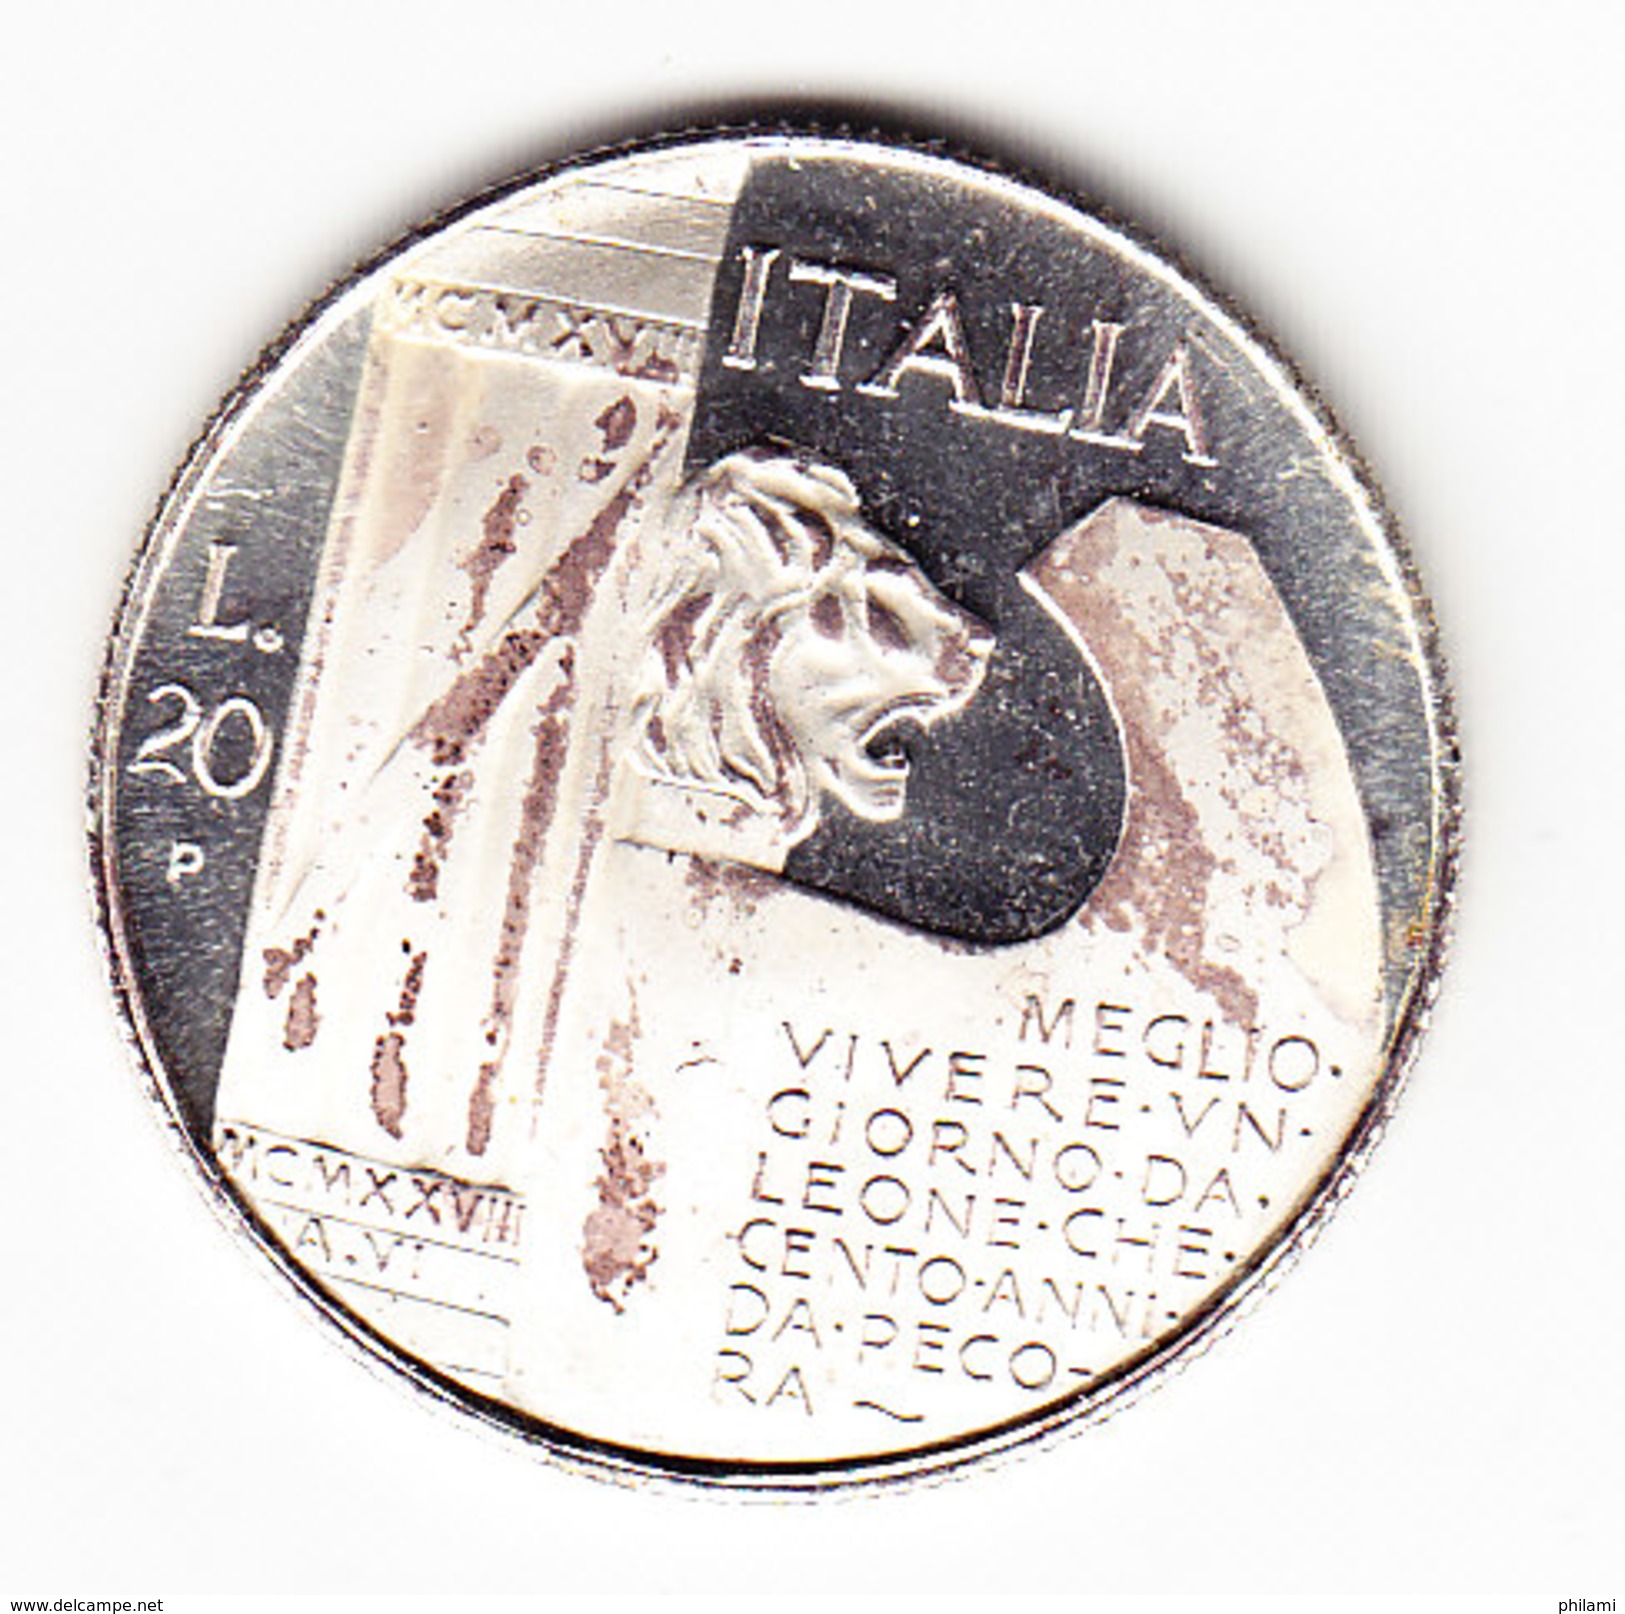 ITALIE, KM70, 1928 MUSSOLINI, 20 Lire, FAUSSE, FAKE. (AUP62) - 1900-1946 : Victor Emmanuel III & Umberto II